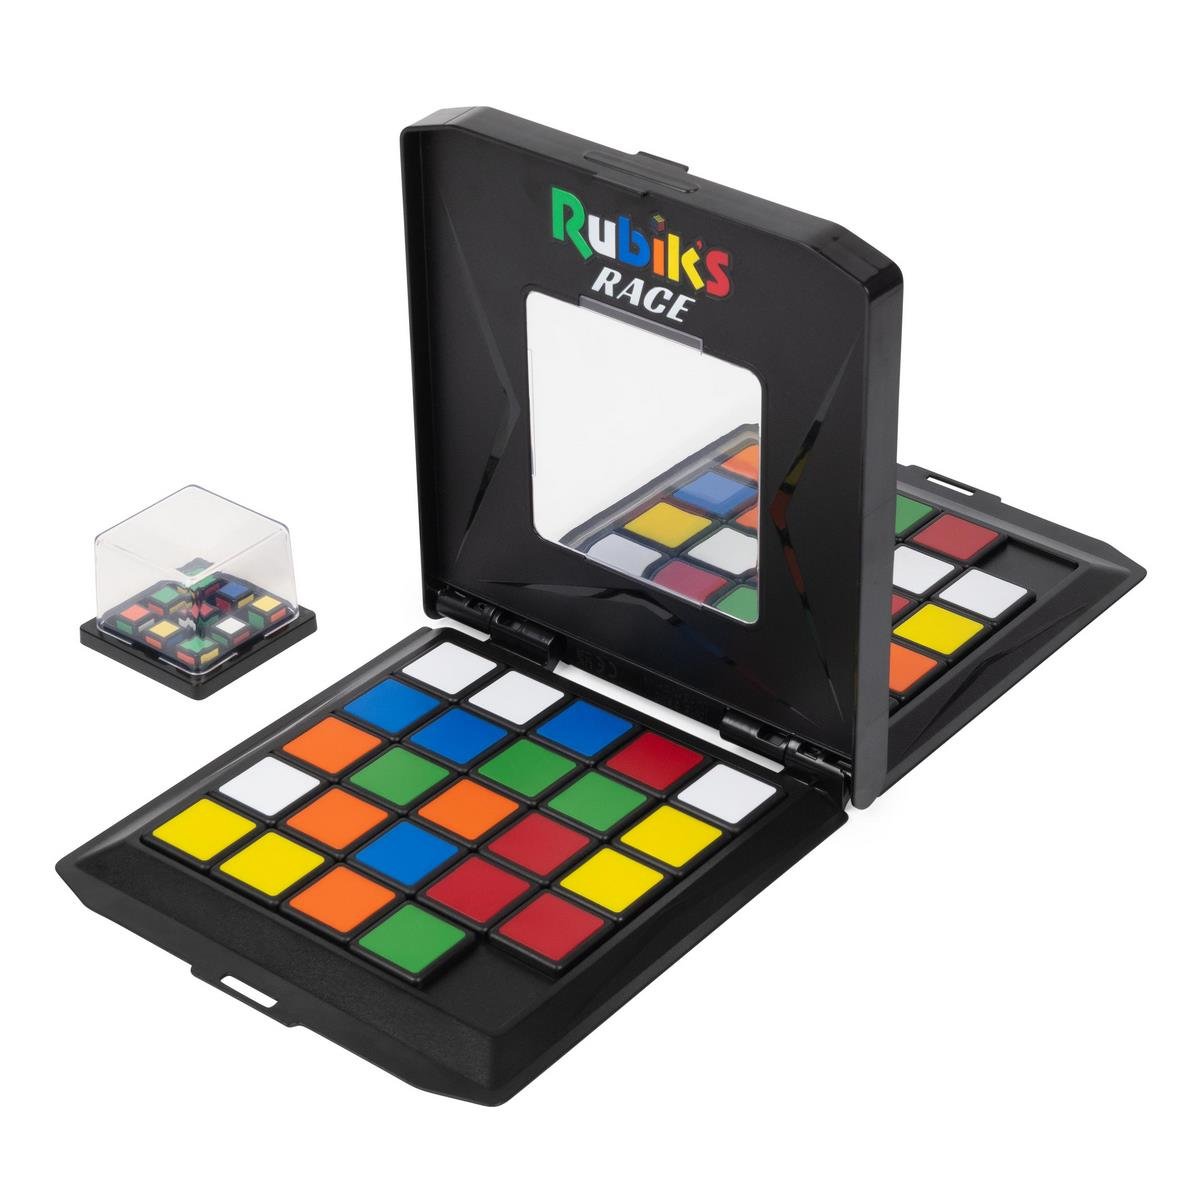 Rubik's Race → MasterCubeStore